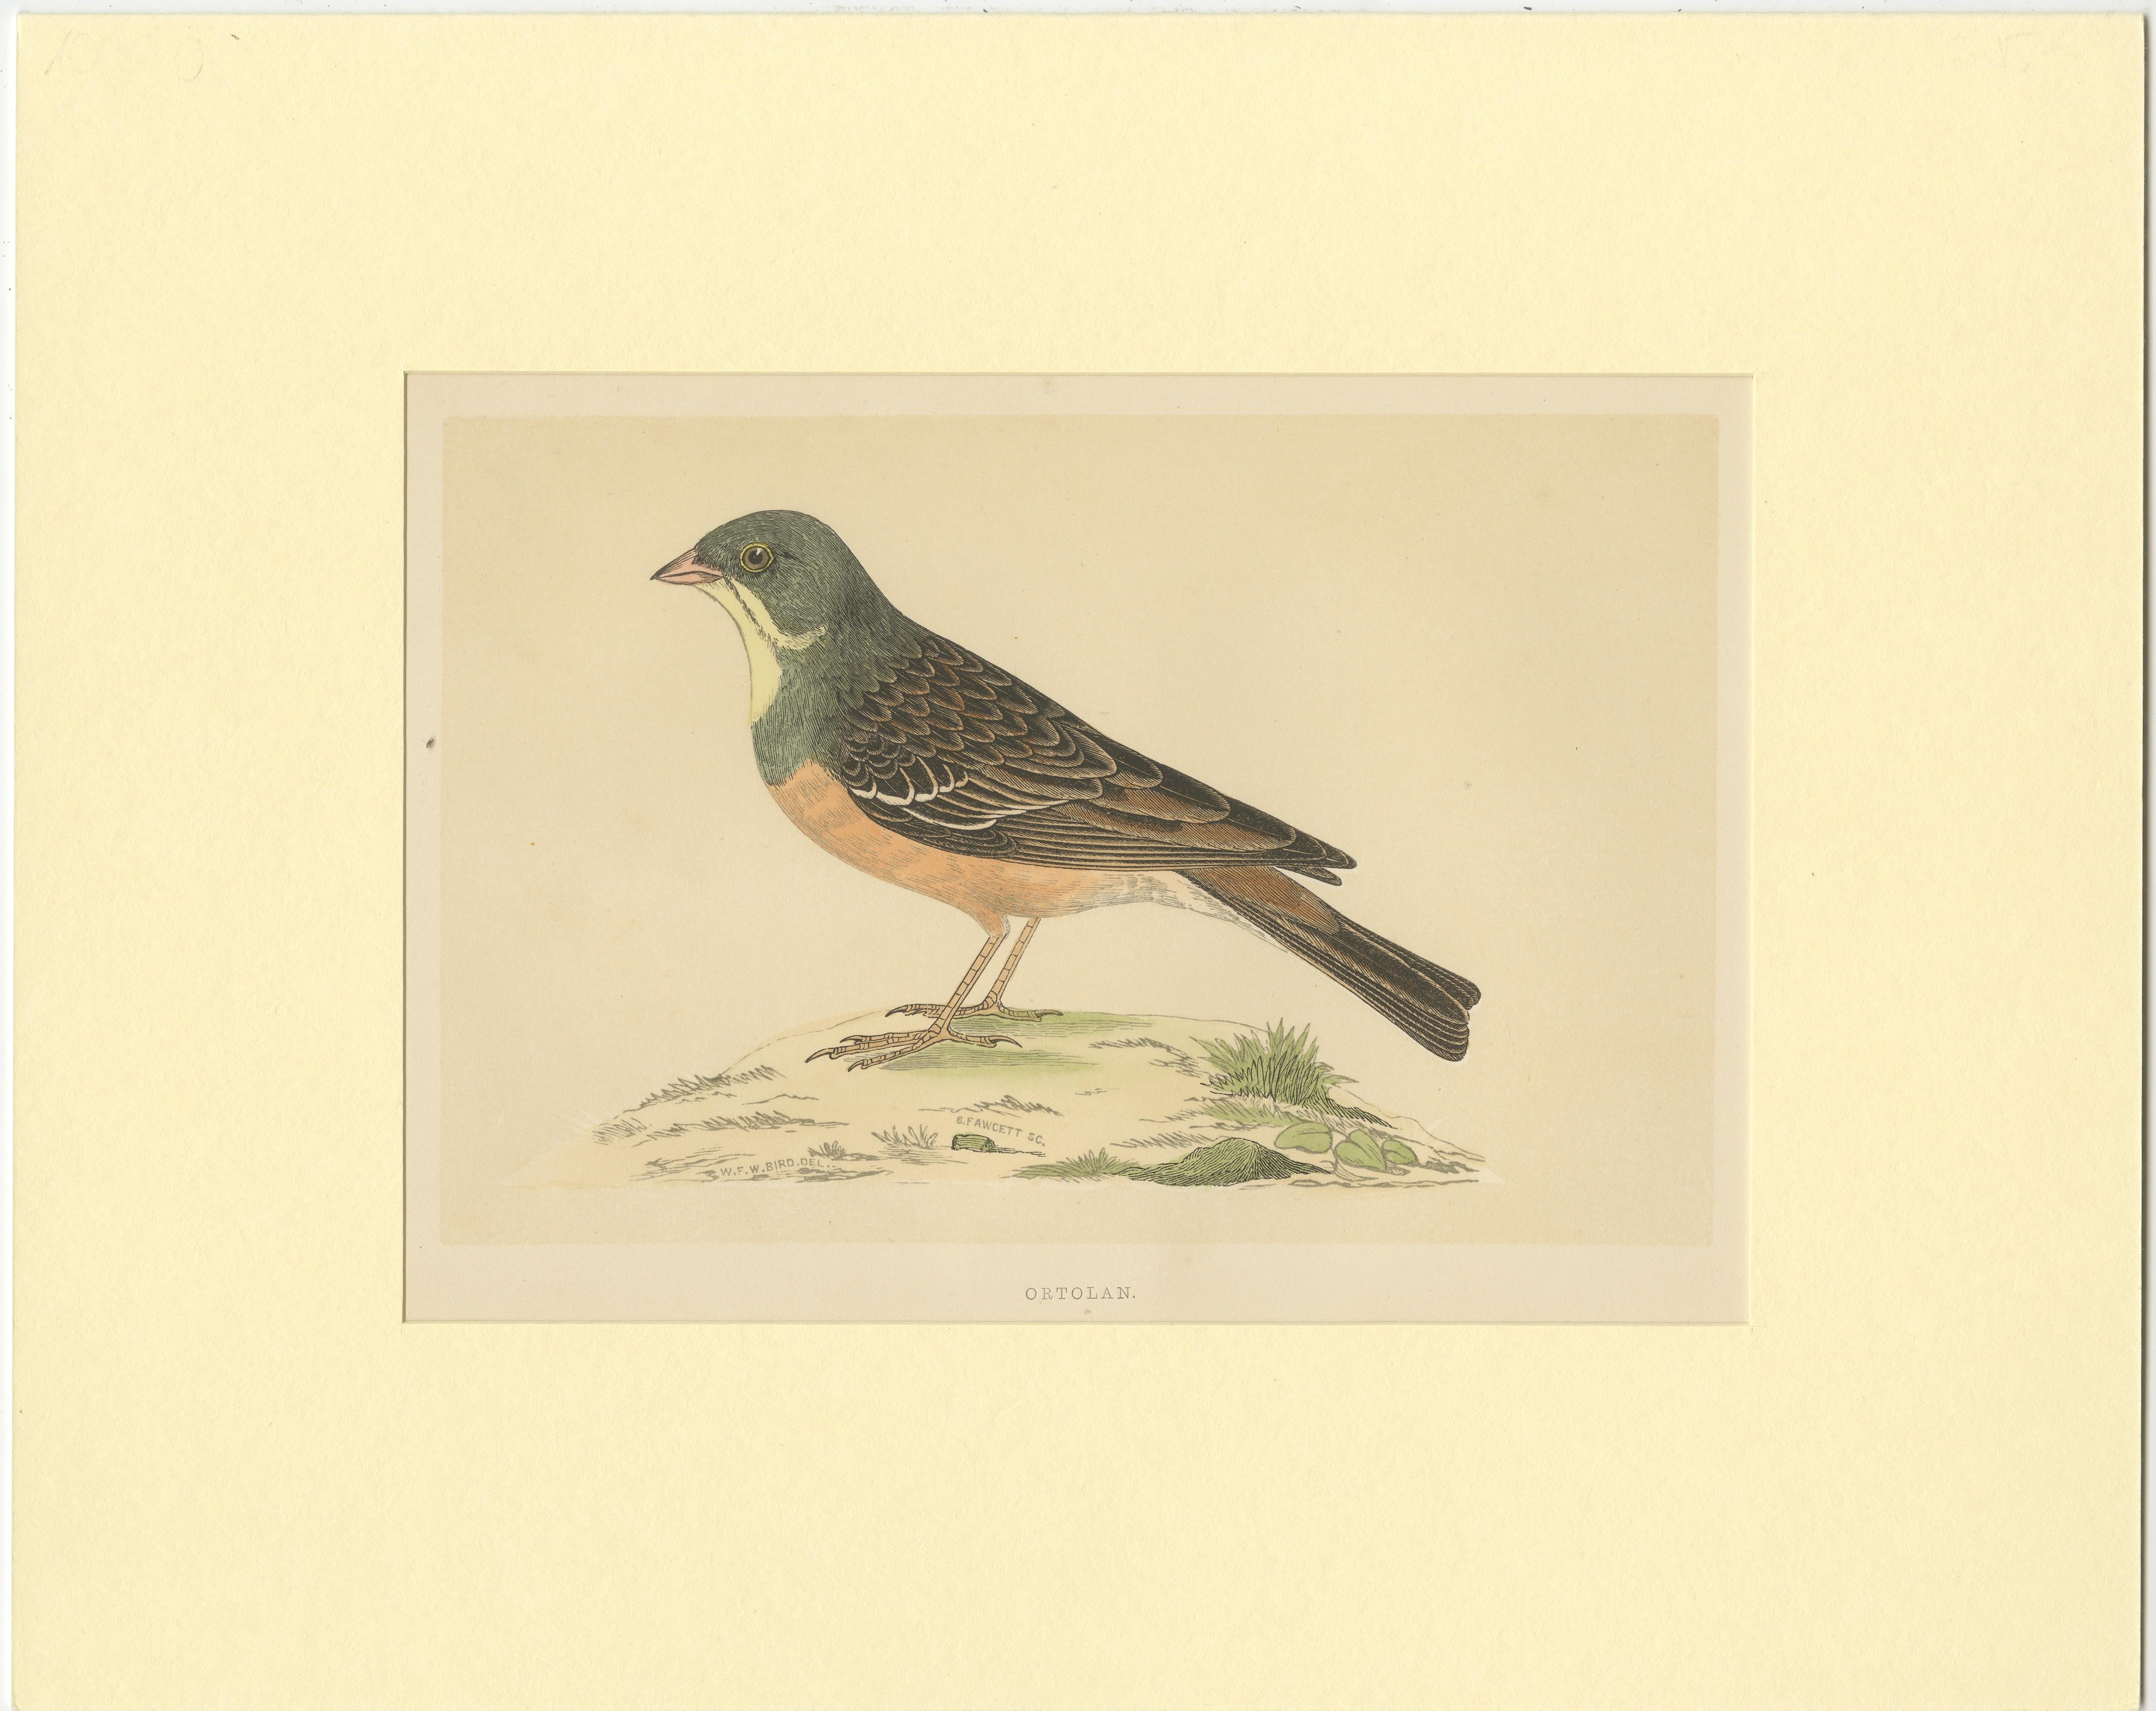 Originaler antiker Vogeldruck eines Ortolans. Dieser Druck stammt aus 